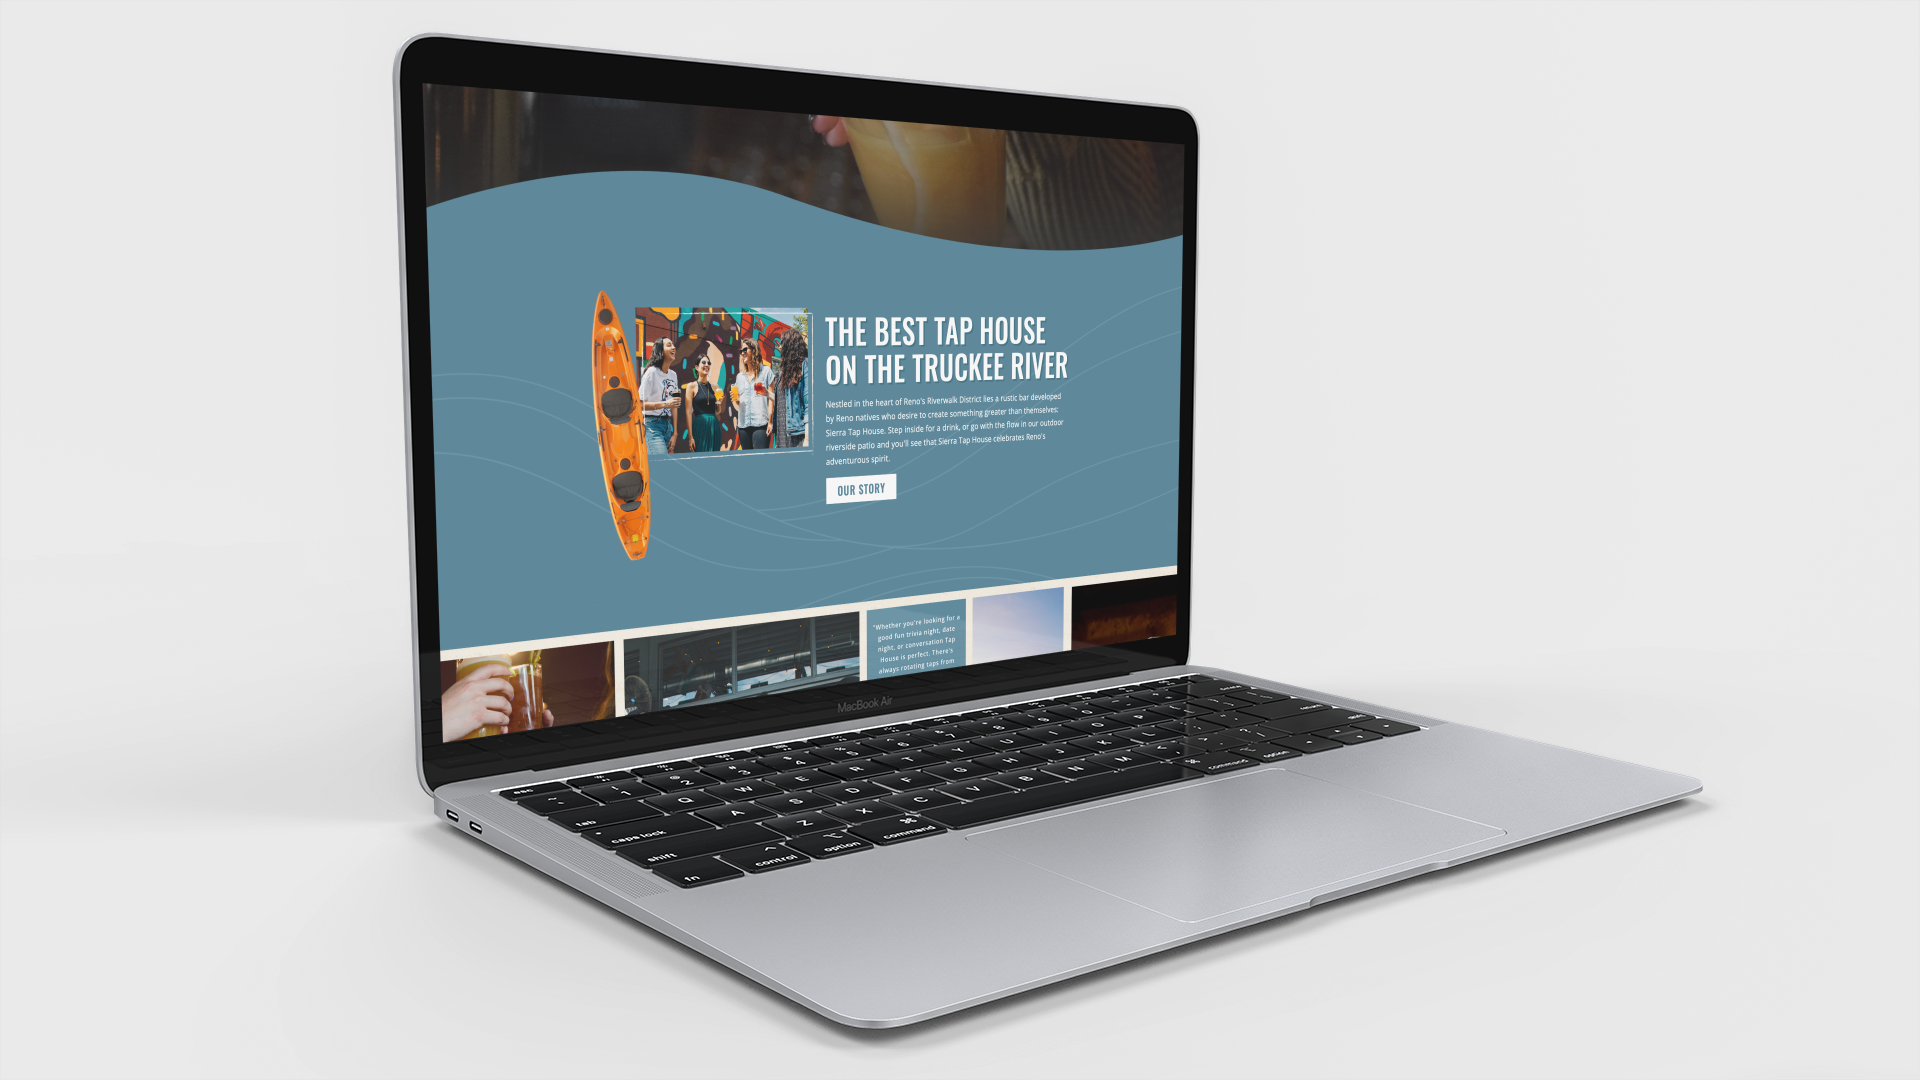 Macbook displaying the website of Sierra Tap House.